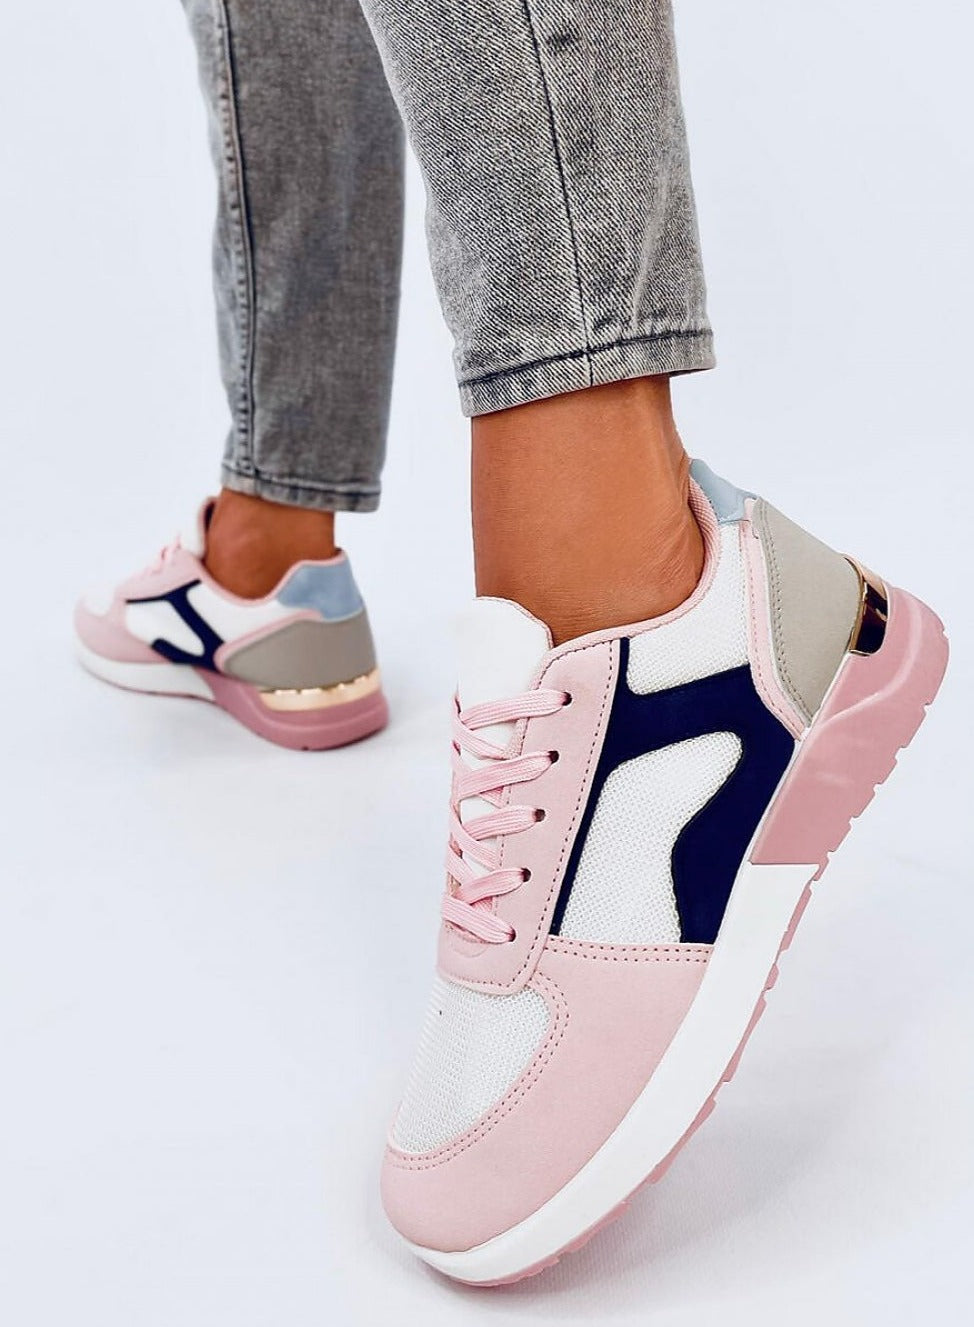 TEEK - Blue Pink Pedaled Sneakers SHOES TEEK MH   